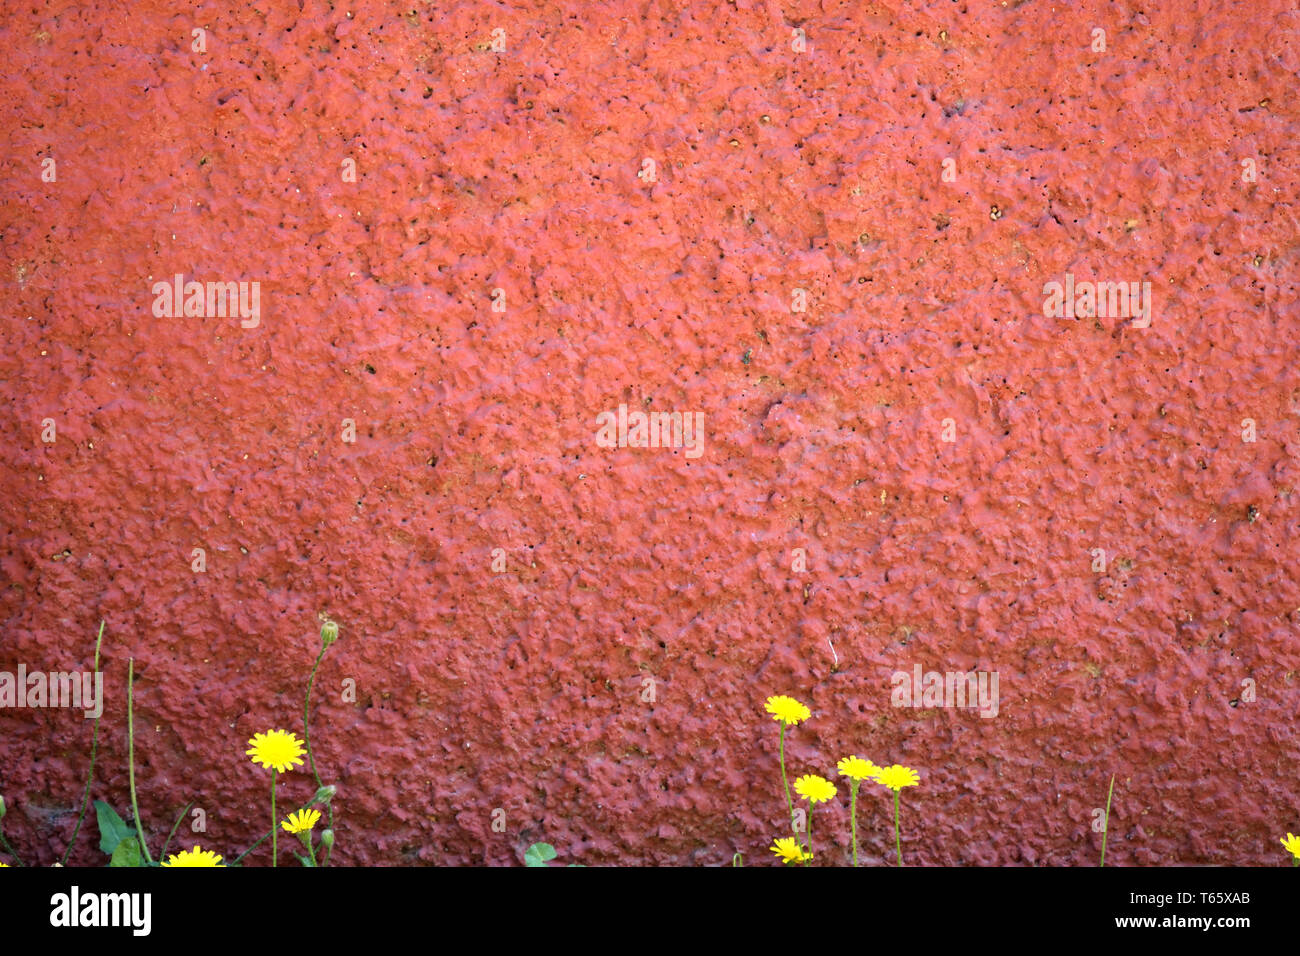 Flor amarilla que crece en una pared roja granular Foto de stock